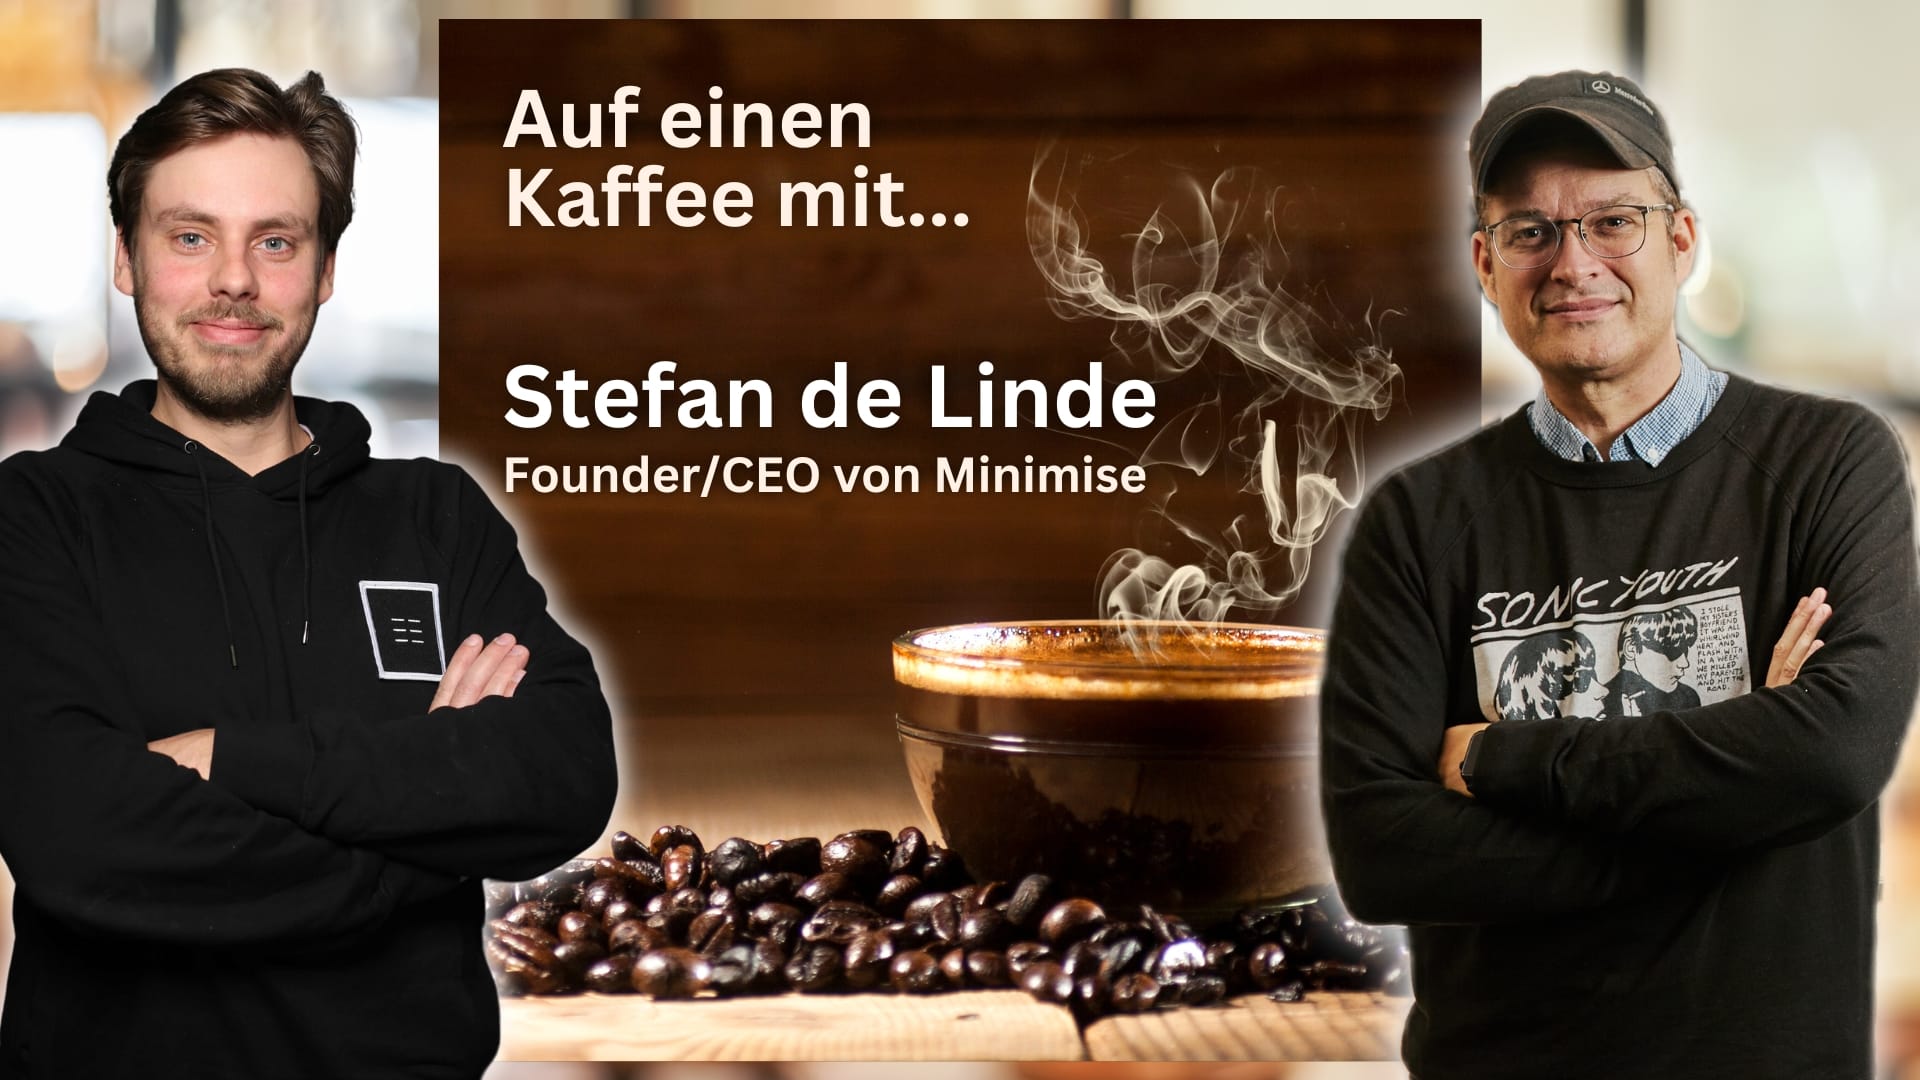 Auf einen Kaffee mit Stefan de Linde von Minimise